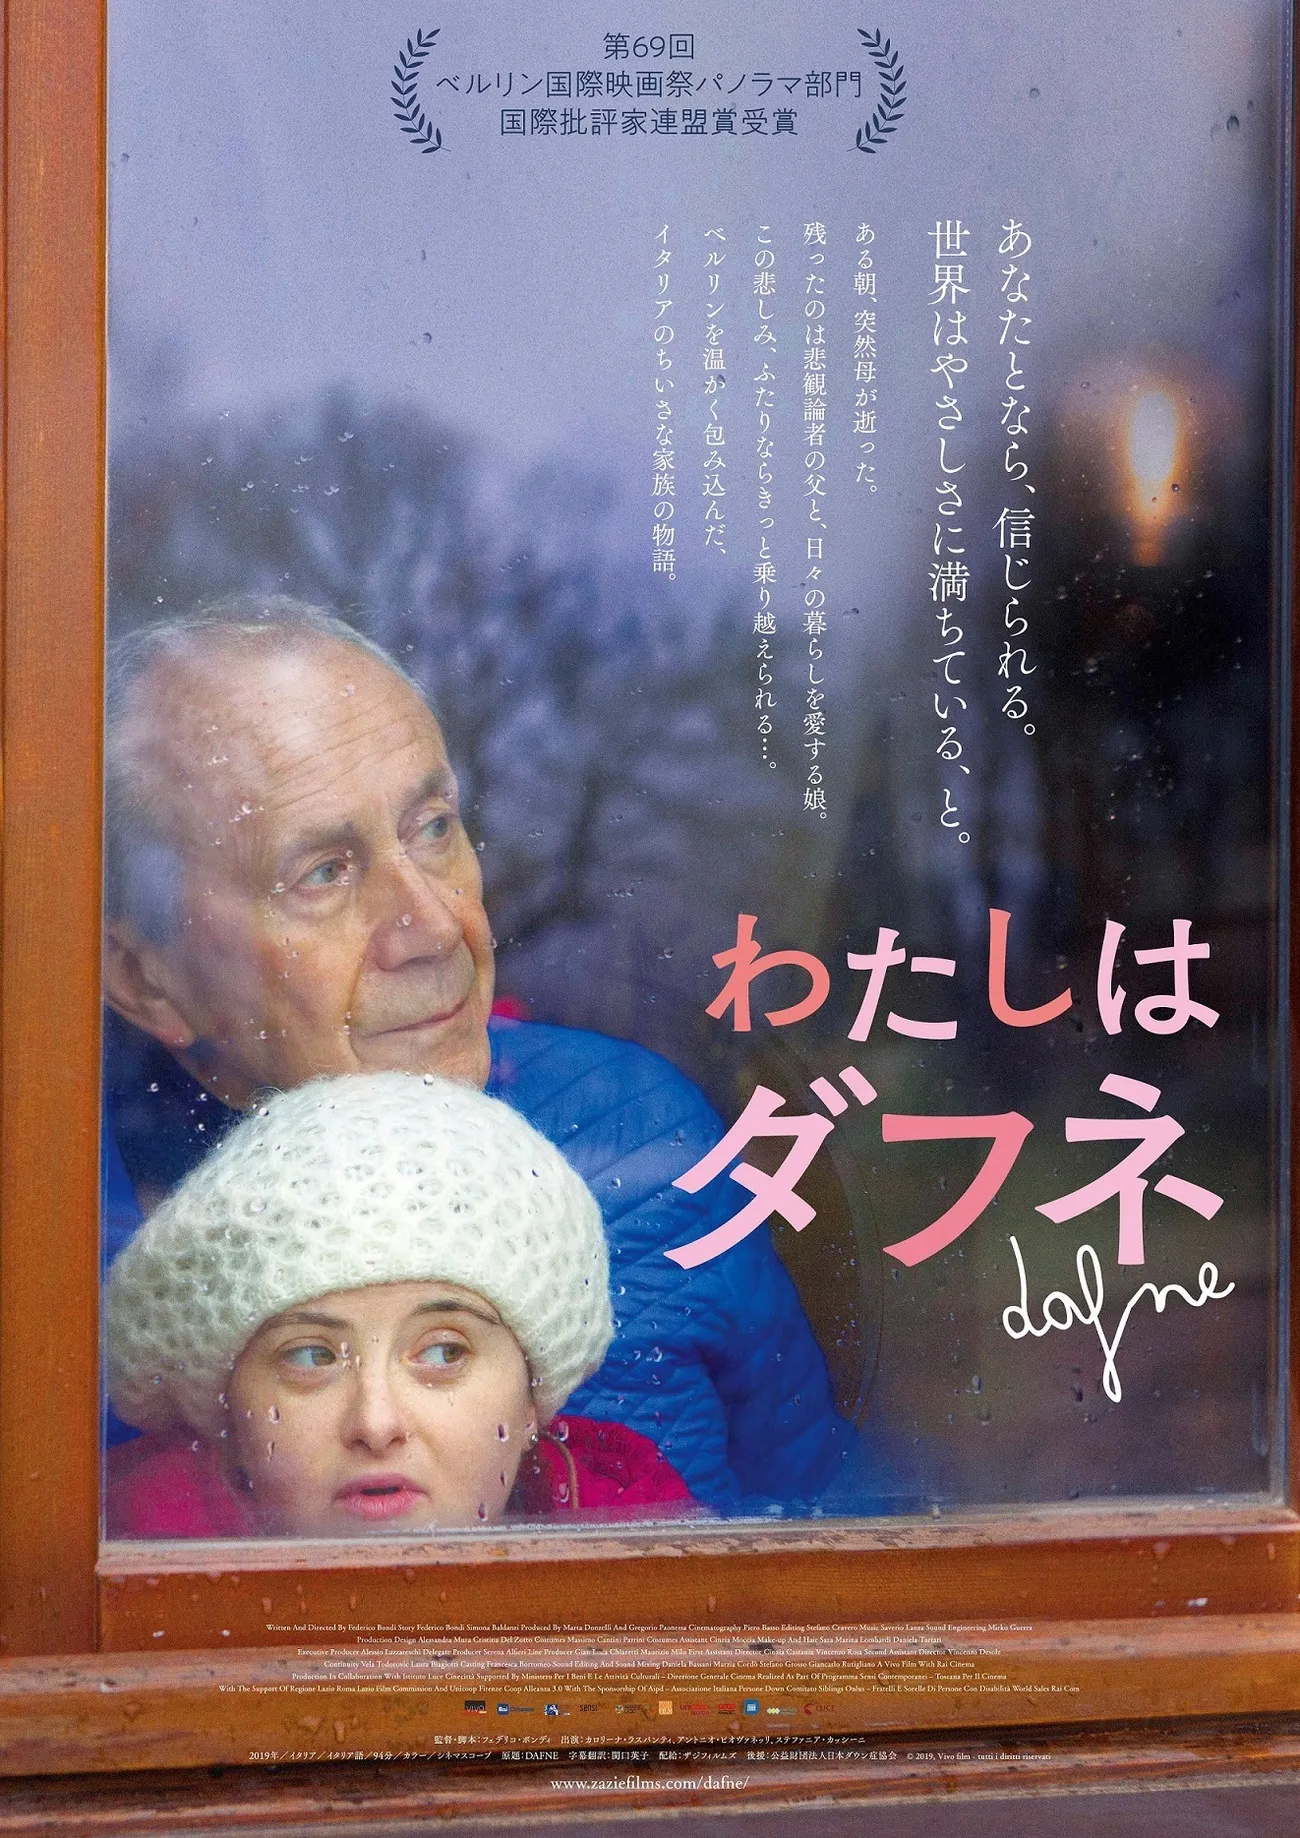 母親を亡くしたダウン症の娘と、年老いた父親が「支え合う」までの軌跡を描くーーイタリア映画「わたしはダフネ」、7月公開のタイトル画像